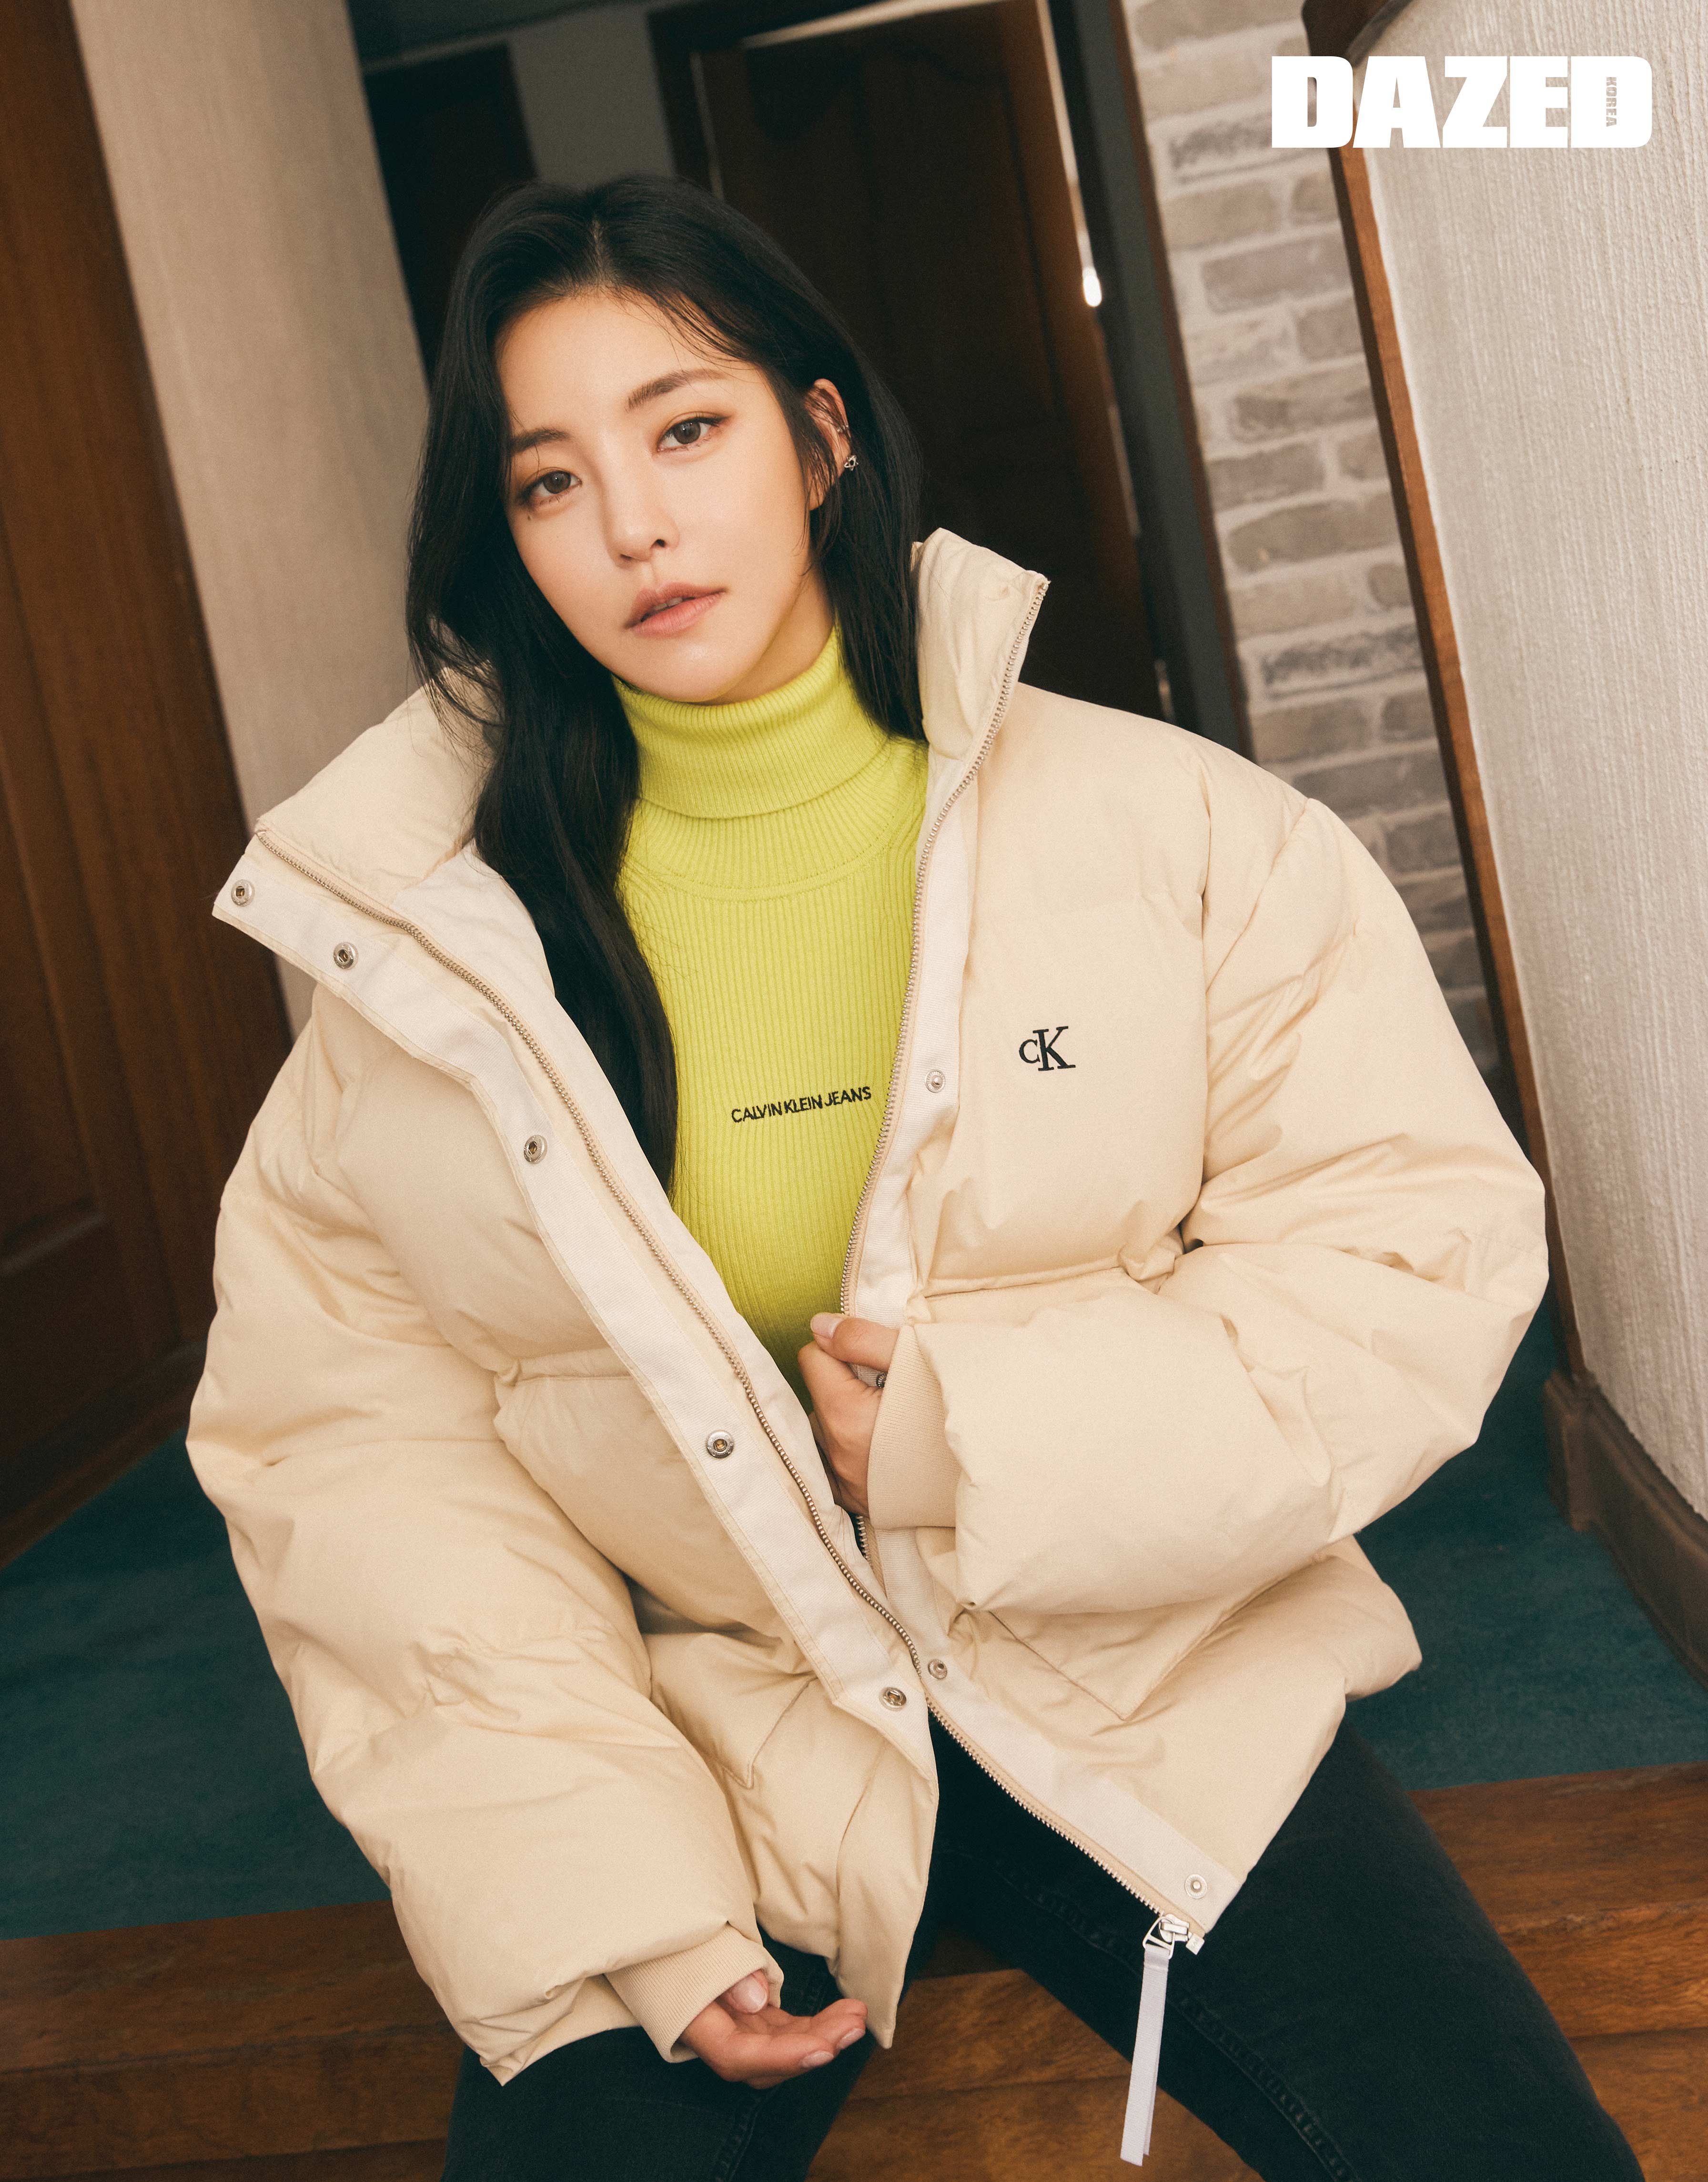 Brave Girls Yujeong Calvin Klein - Dazed Korea 2021 Pictorial (HD/HQ) -  K-Pop Database /